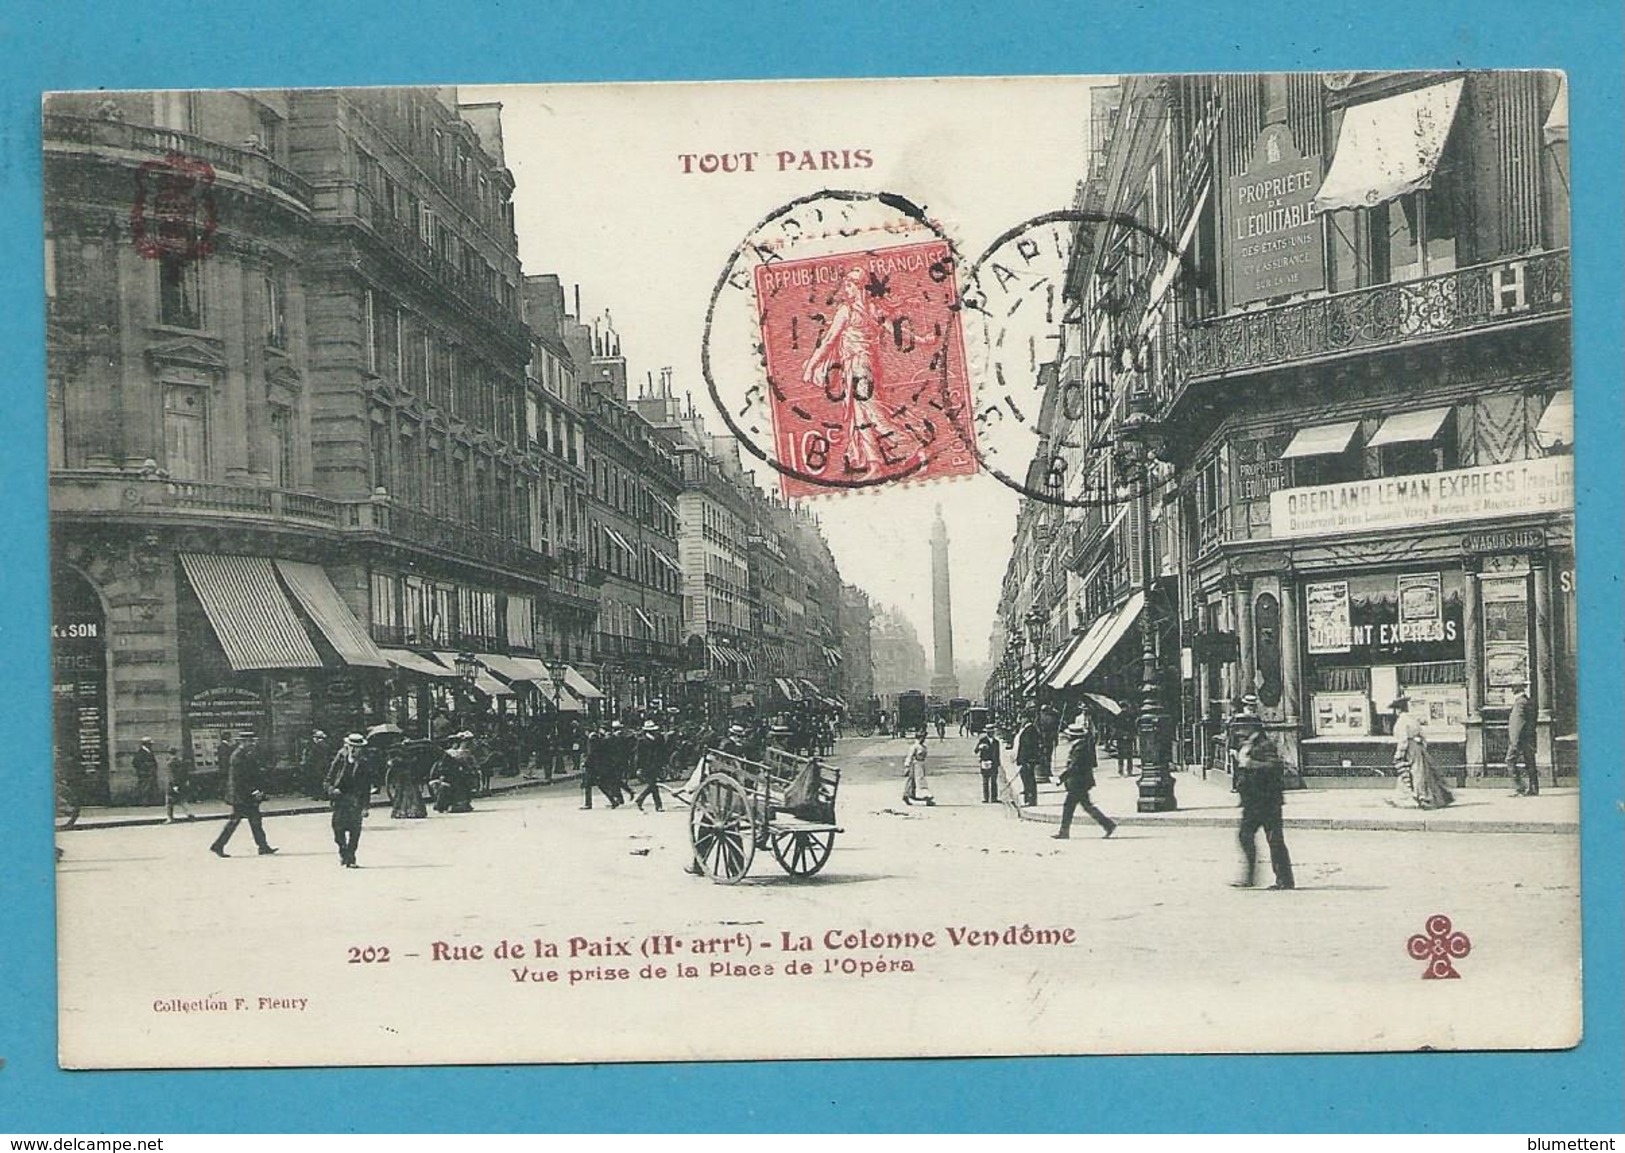 CPA TOUT PARIS 202 - Rue De La Paix (IIème Arrt.) Edition FLEURY - Paris (02)